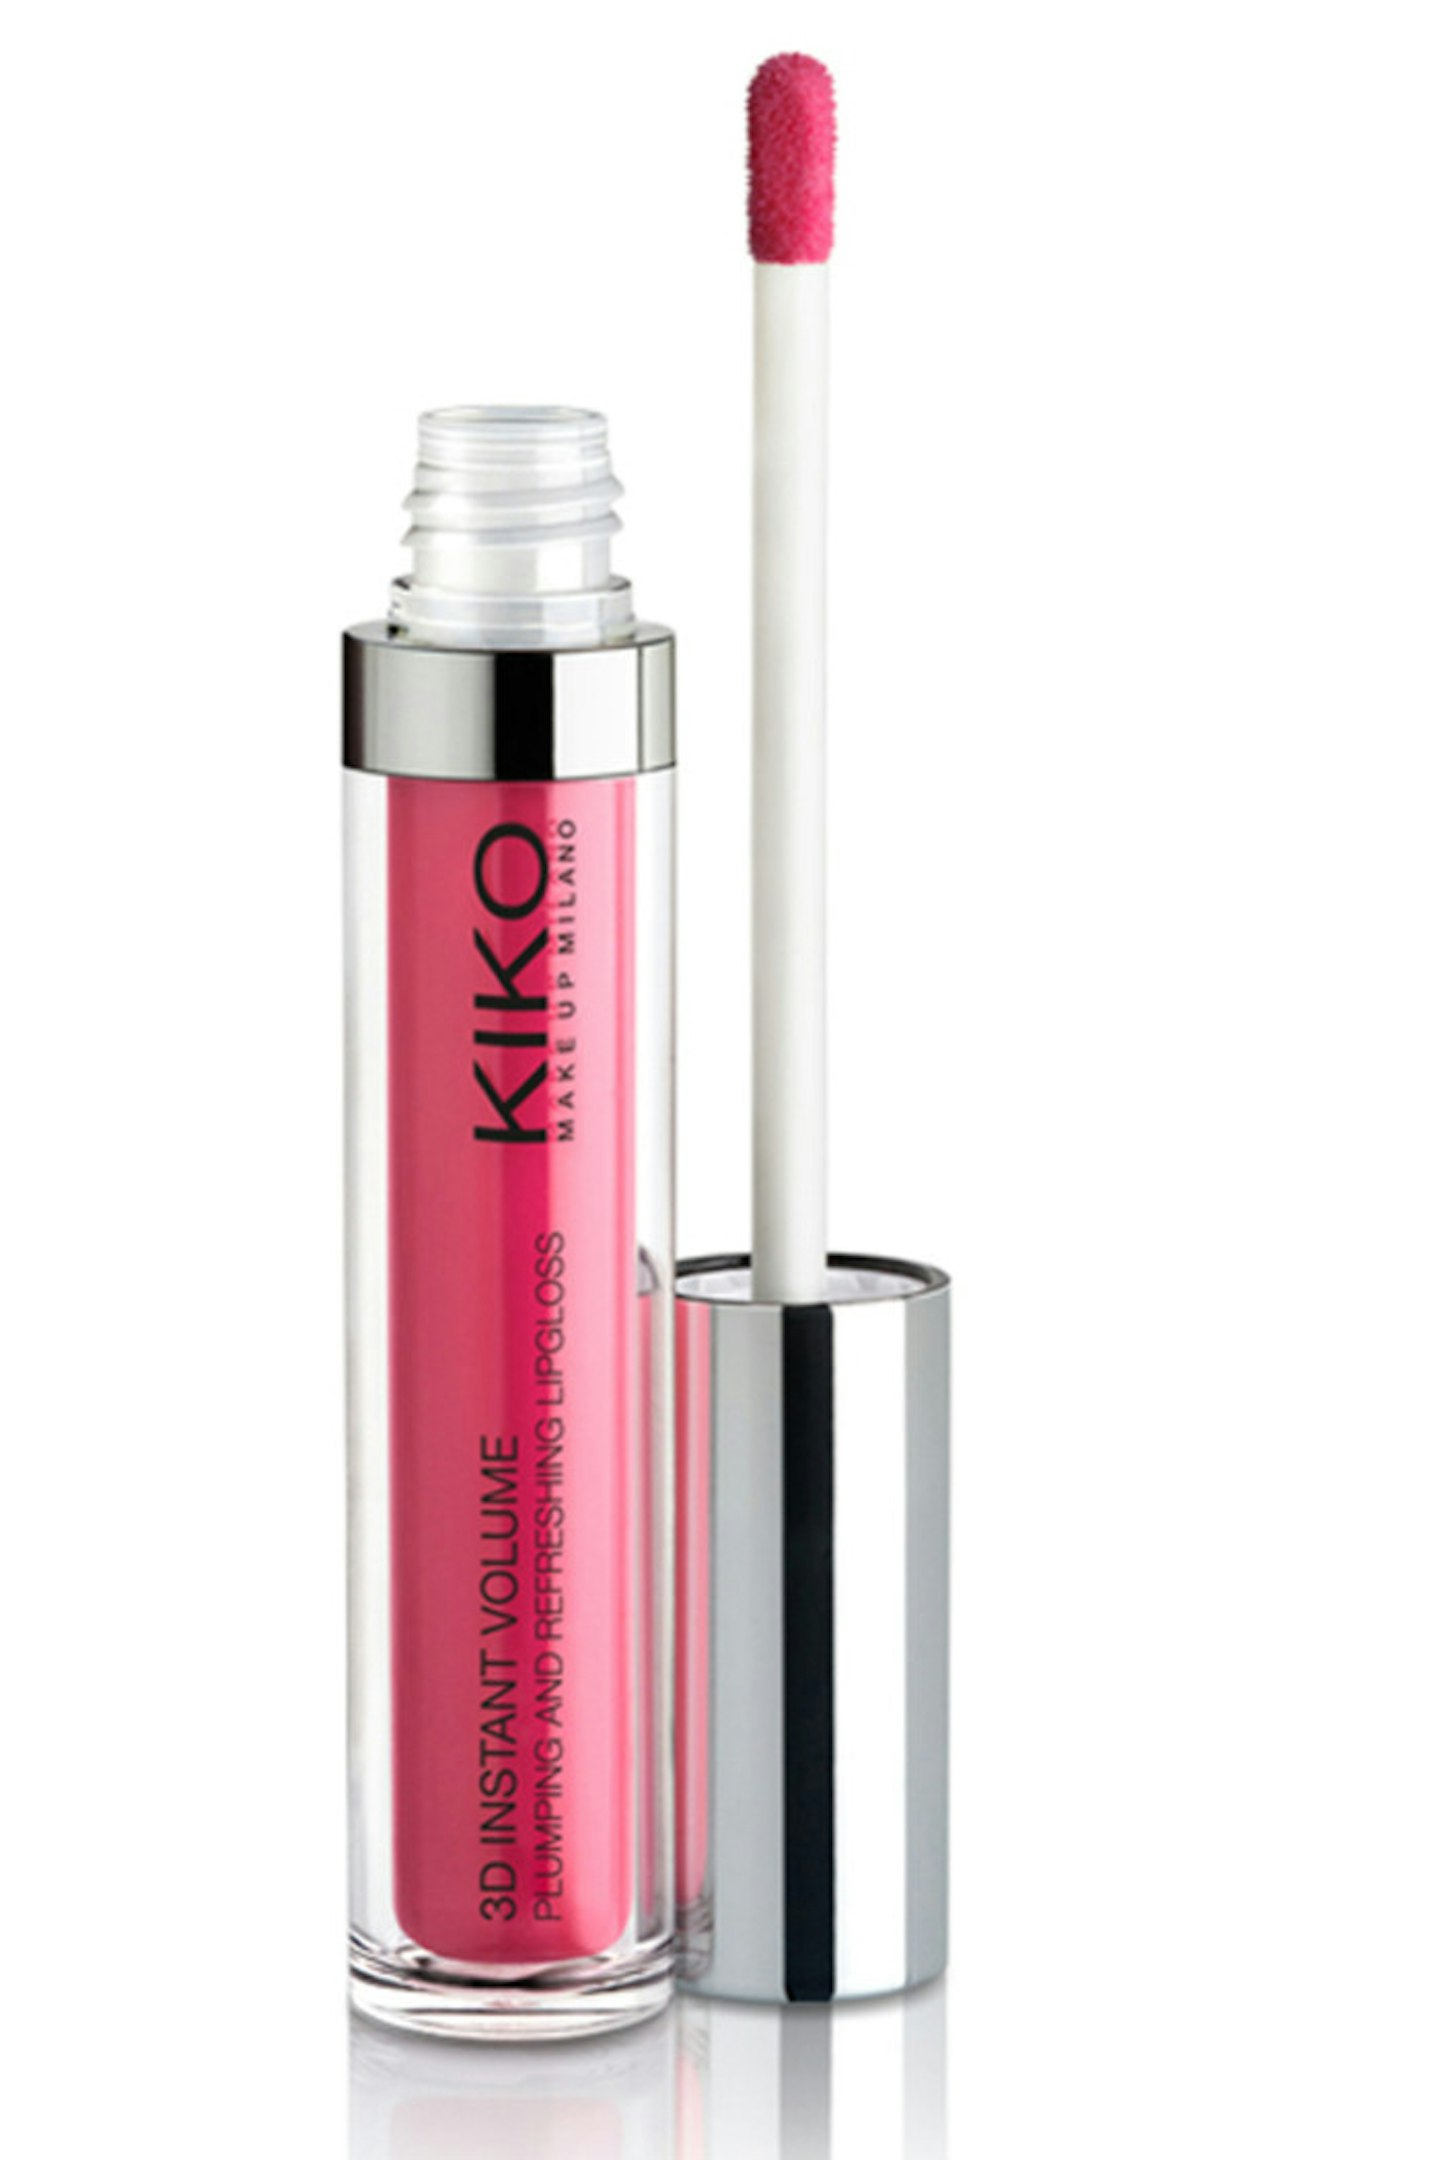 Kiko 3D Instant Volume Lip Gloss, £6.90